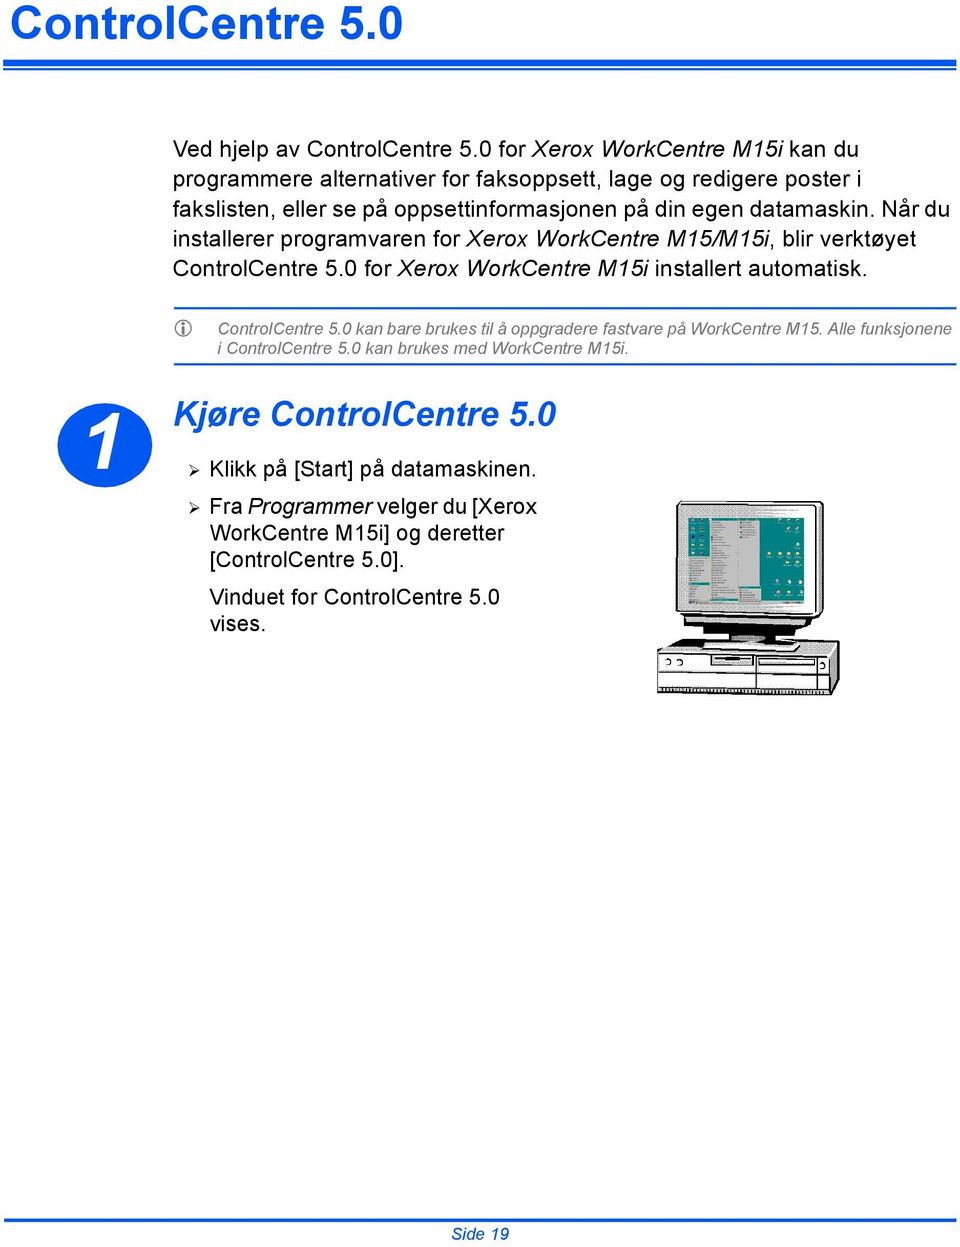 Når du installerer programvaren for Xerox WorkCentre M15/M15i, blir verktøyet ControlCentre 5.0 for Xerox installert automatisk. E ControlCentre 5.